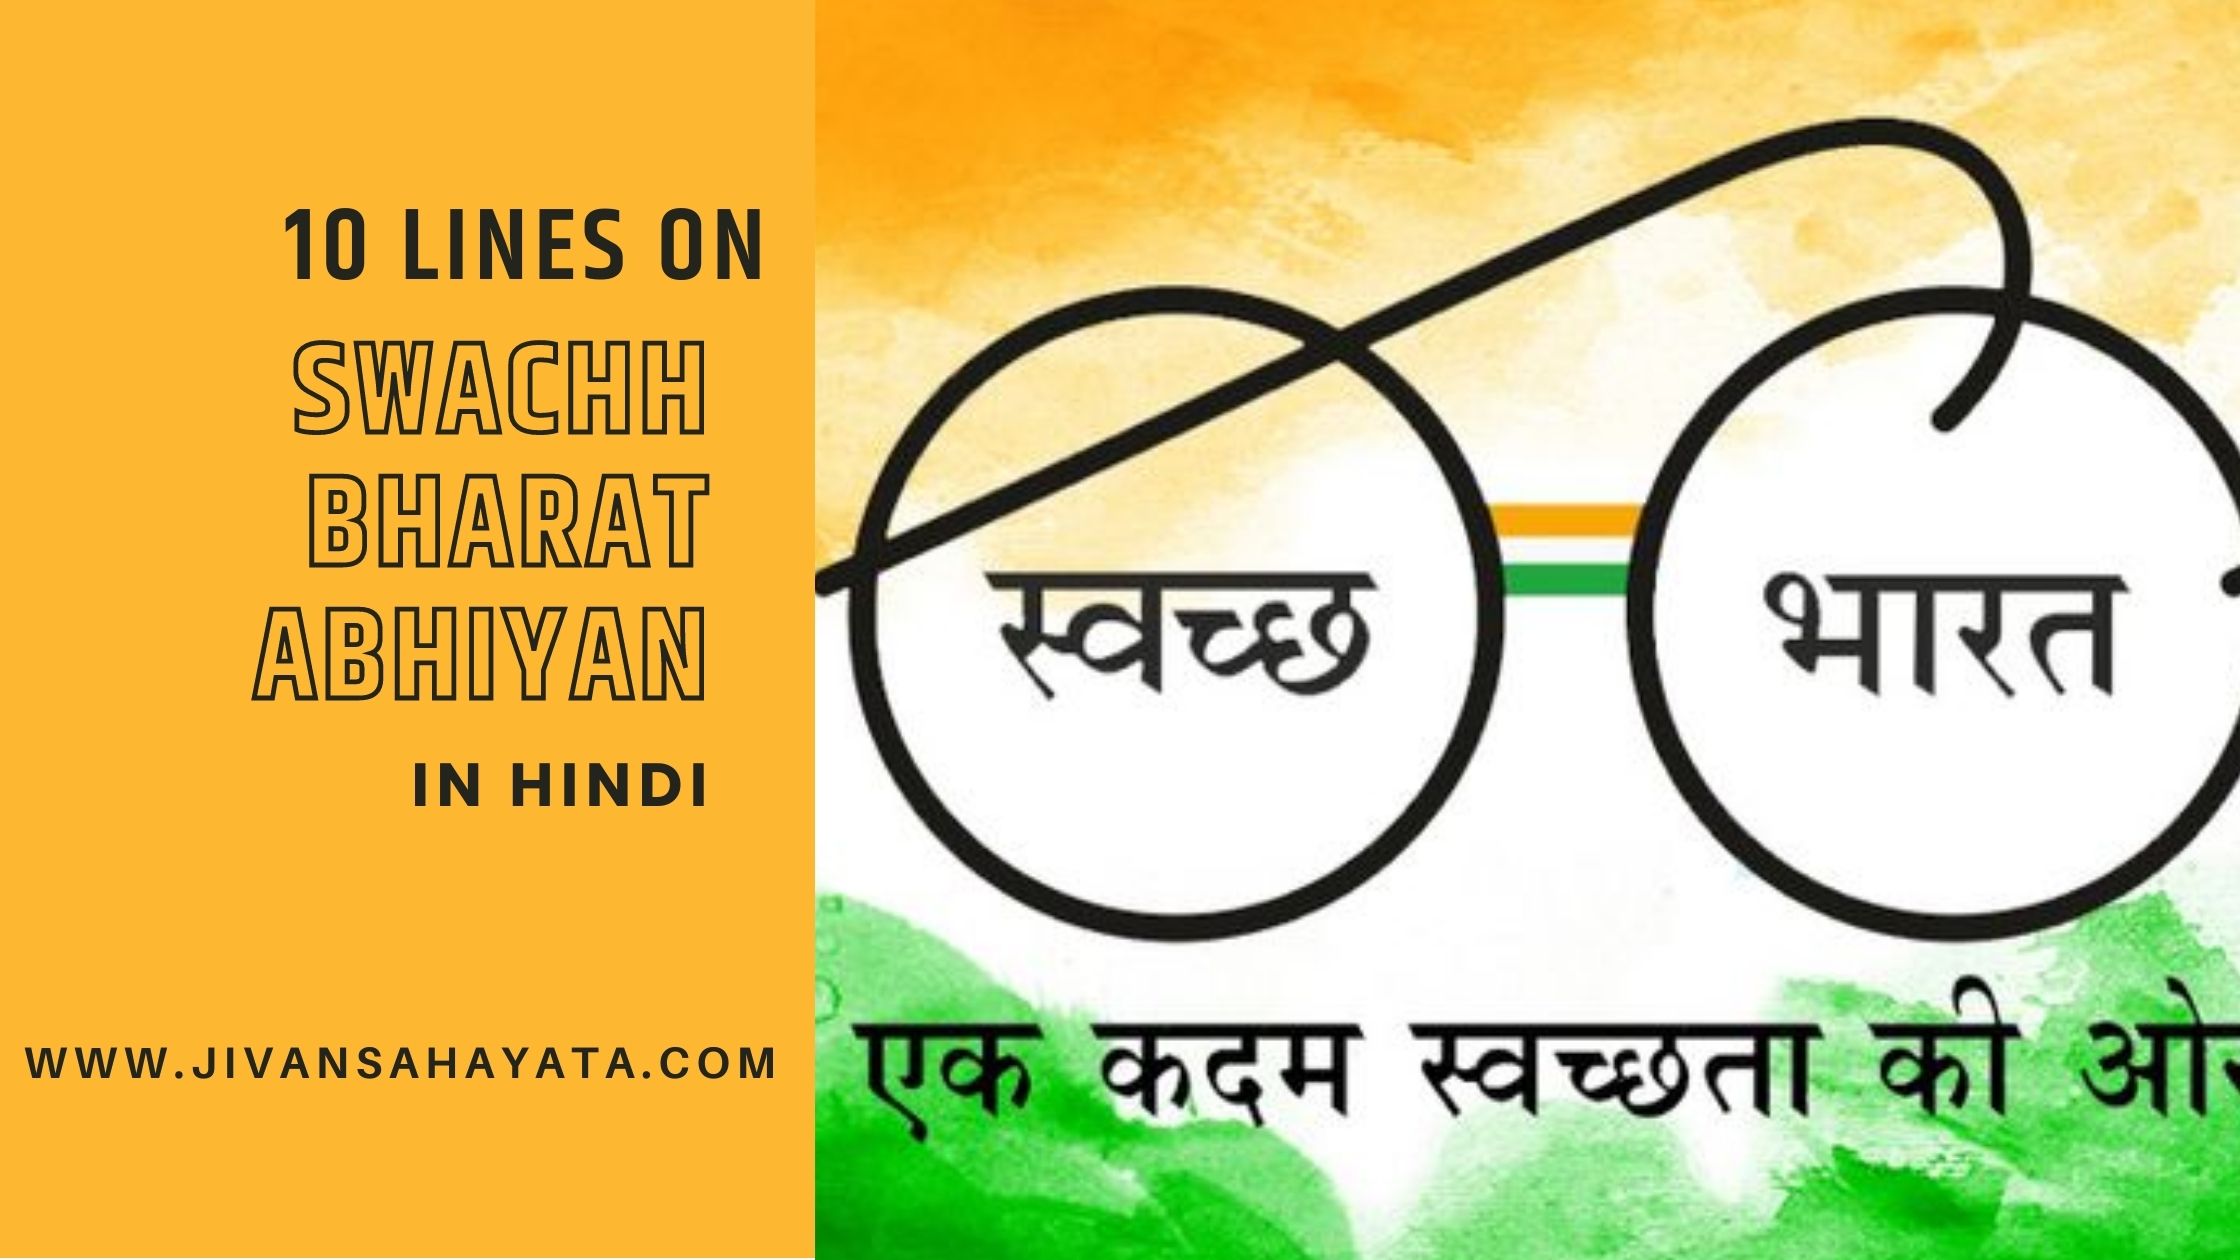 10 lines on Swachh Bharat Abhiyan in Hindi- स्वच्छ भारत अभियान पर 10 लाइन